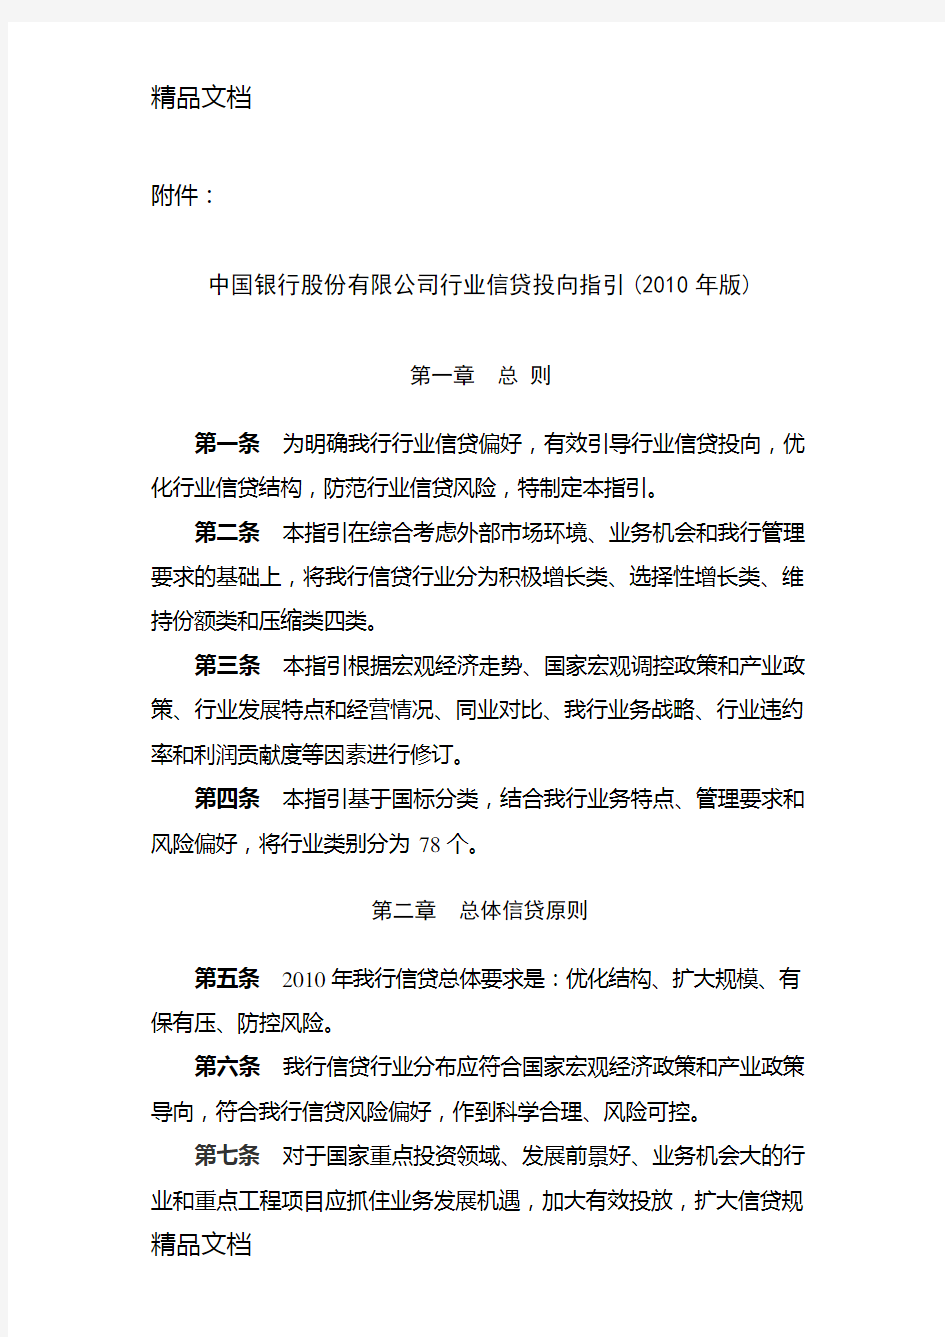 (整理)中国银行股份有限公司行业信贷投向指引年版.